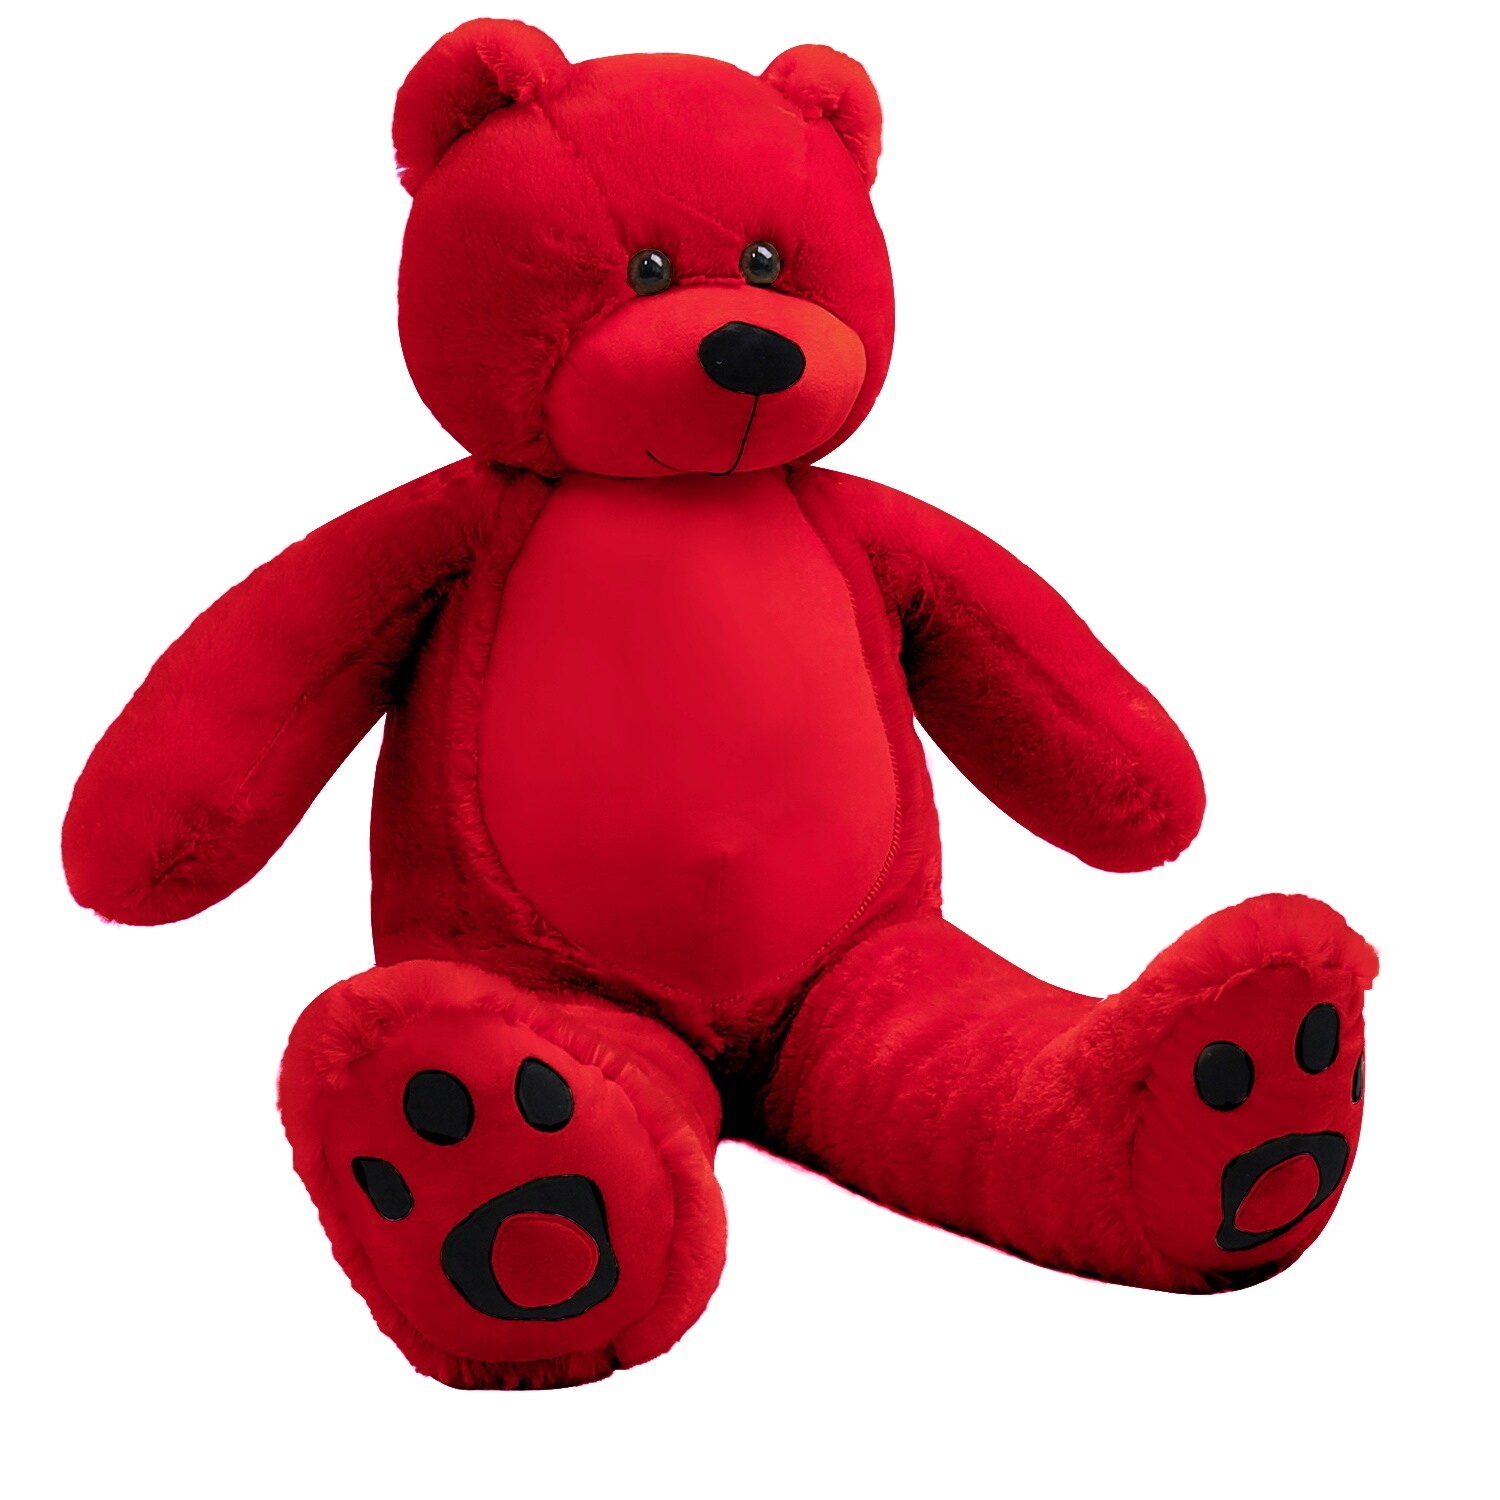 red big teddy